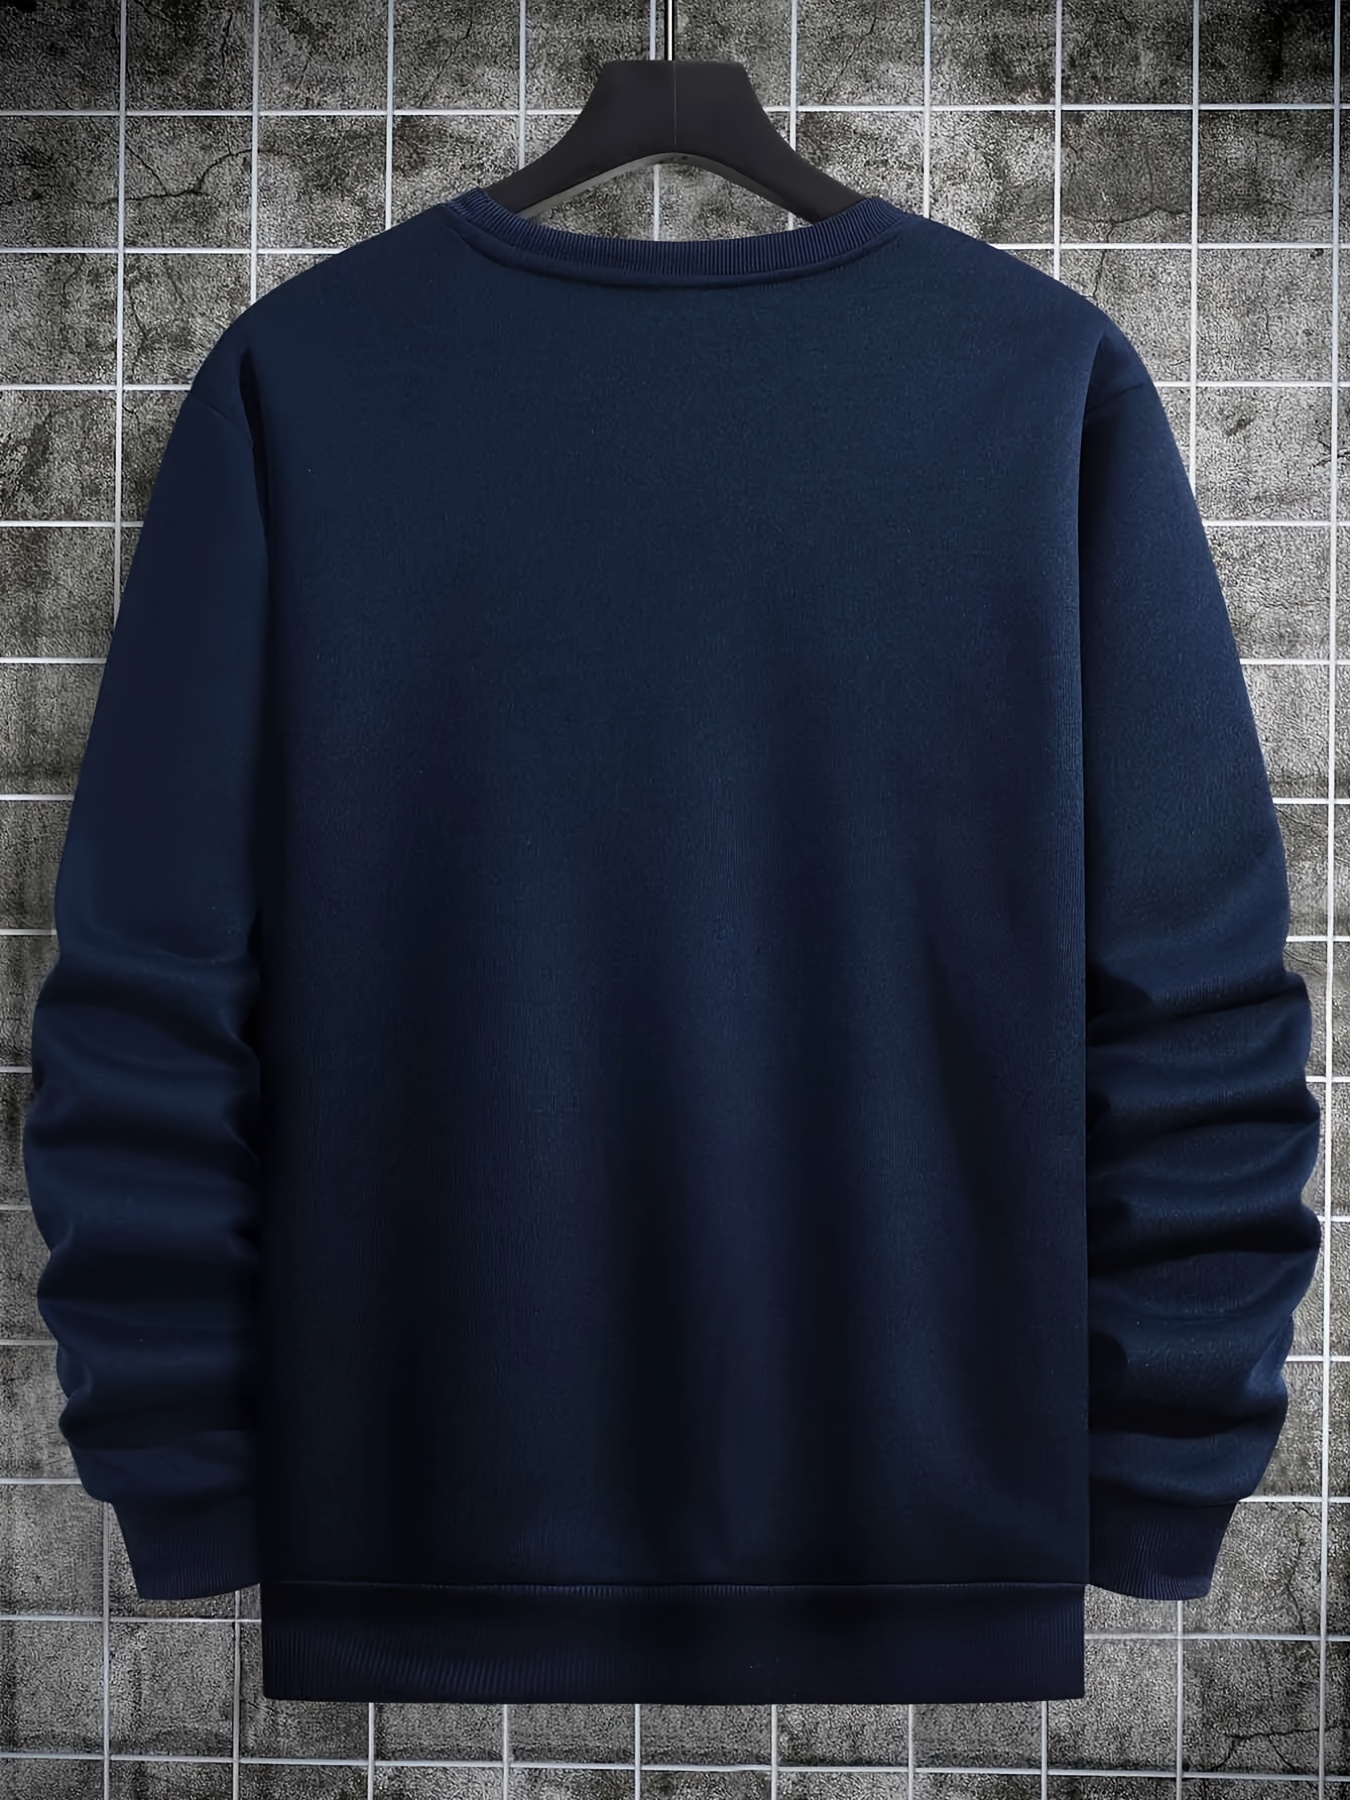 How To Style Crewneck Sweatshirts 